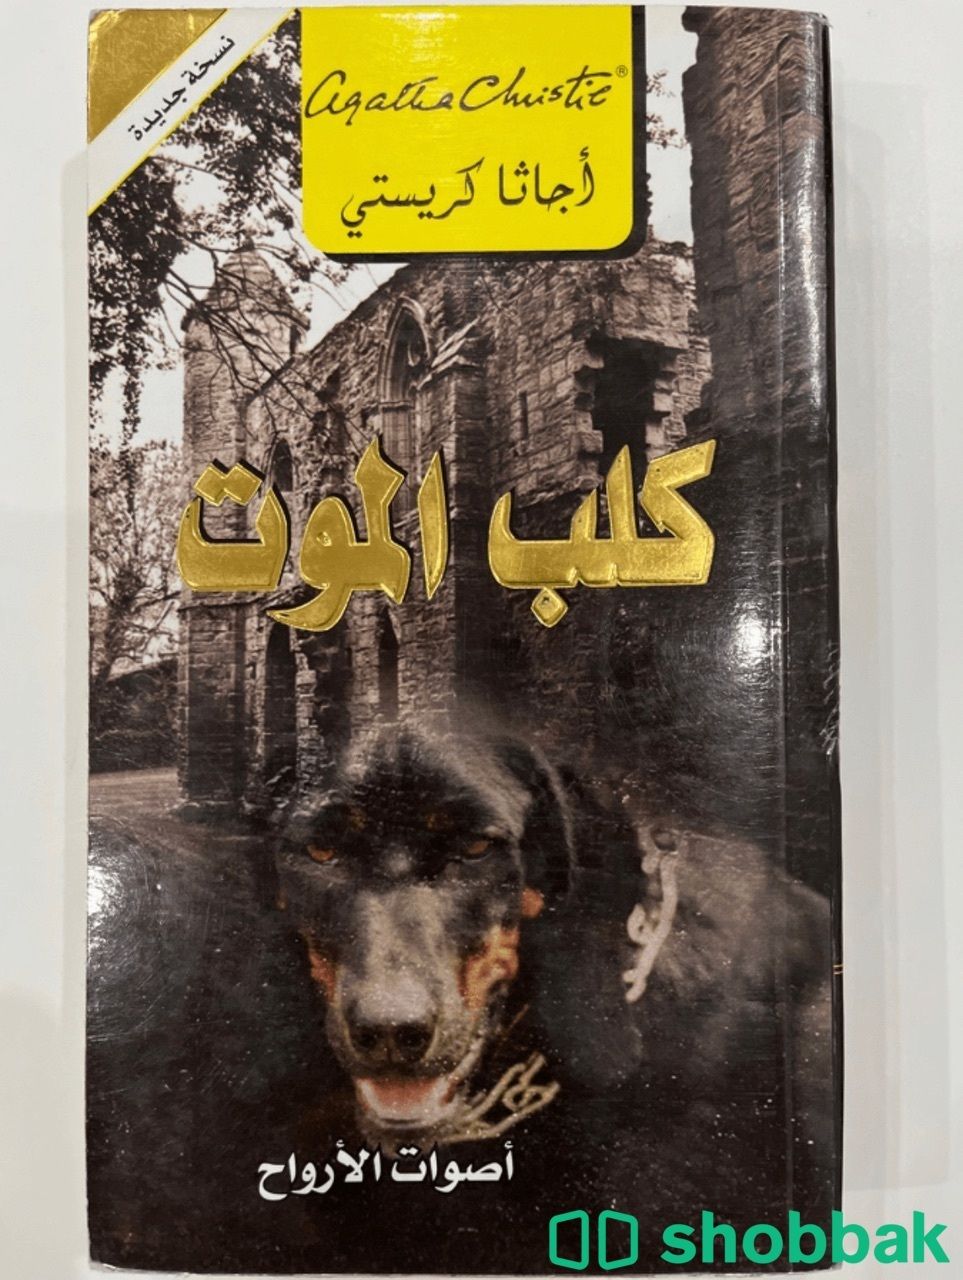 رواية اجاثا كريستي "كلب الموت" شباك السعودية